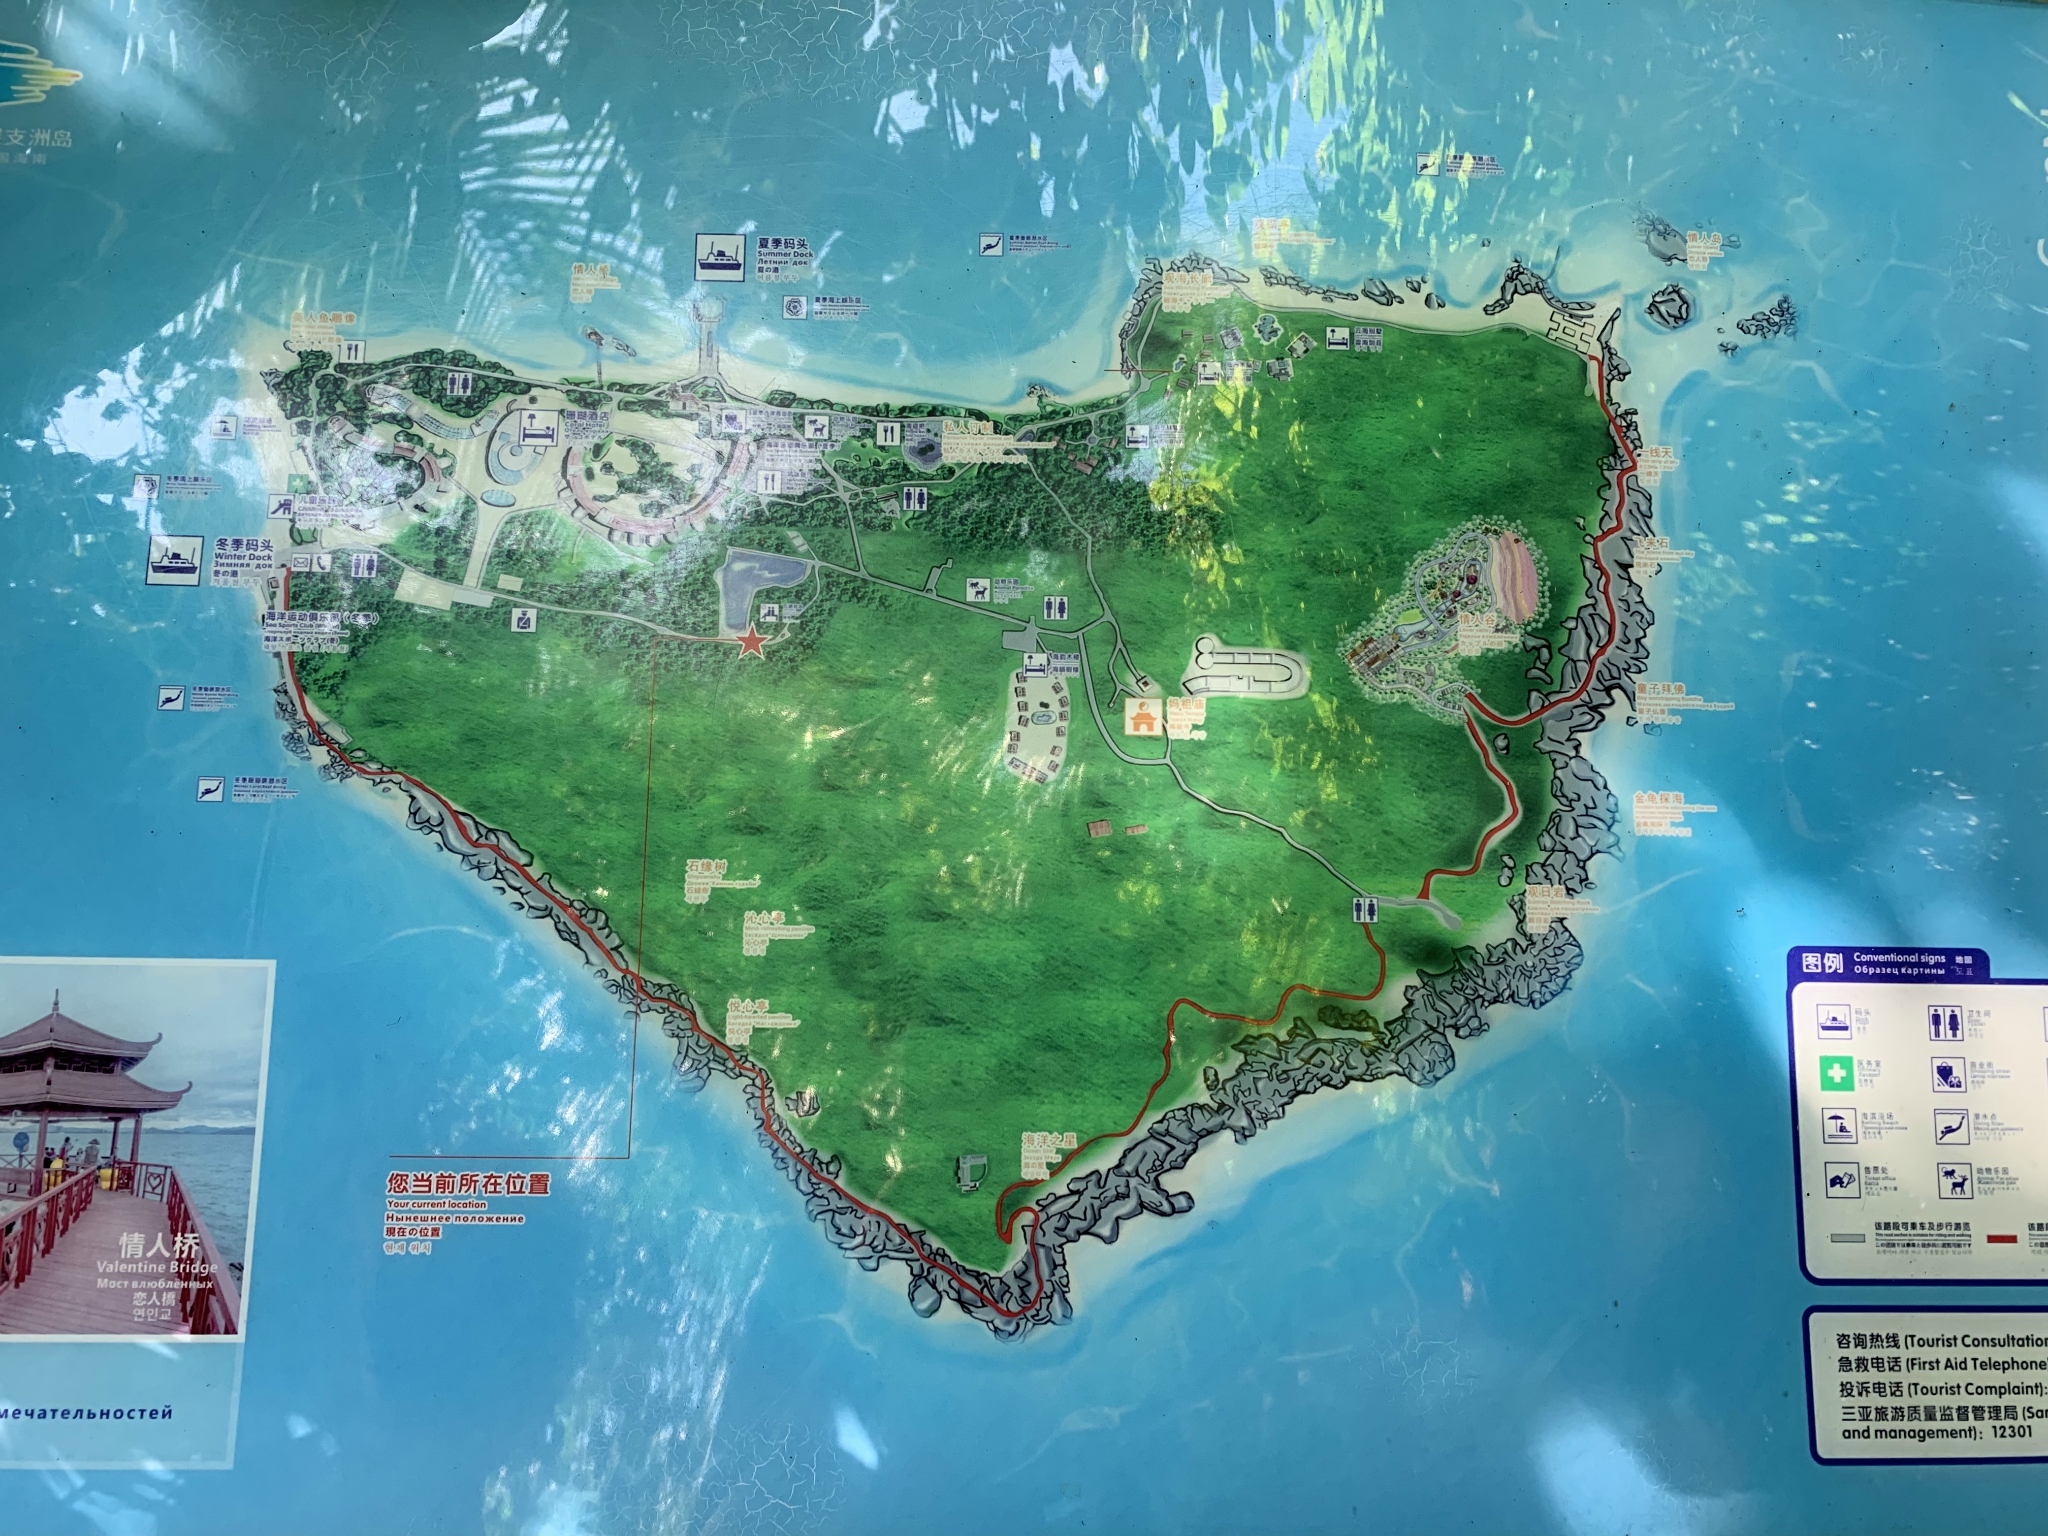 蜈支洲岛旅游景点地图图片